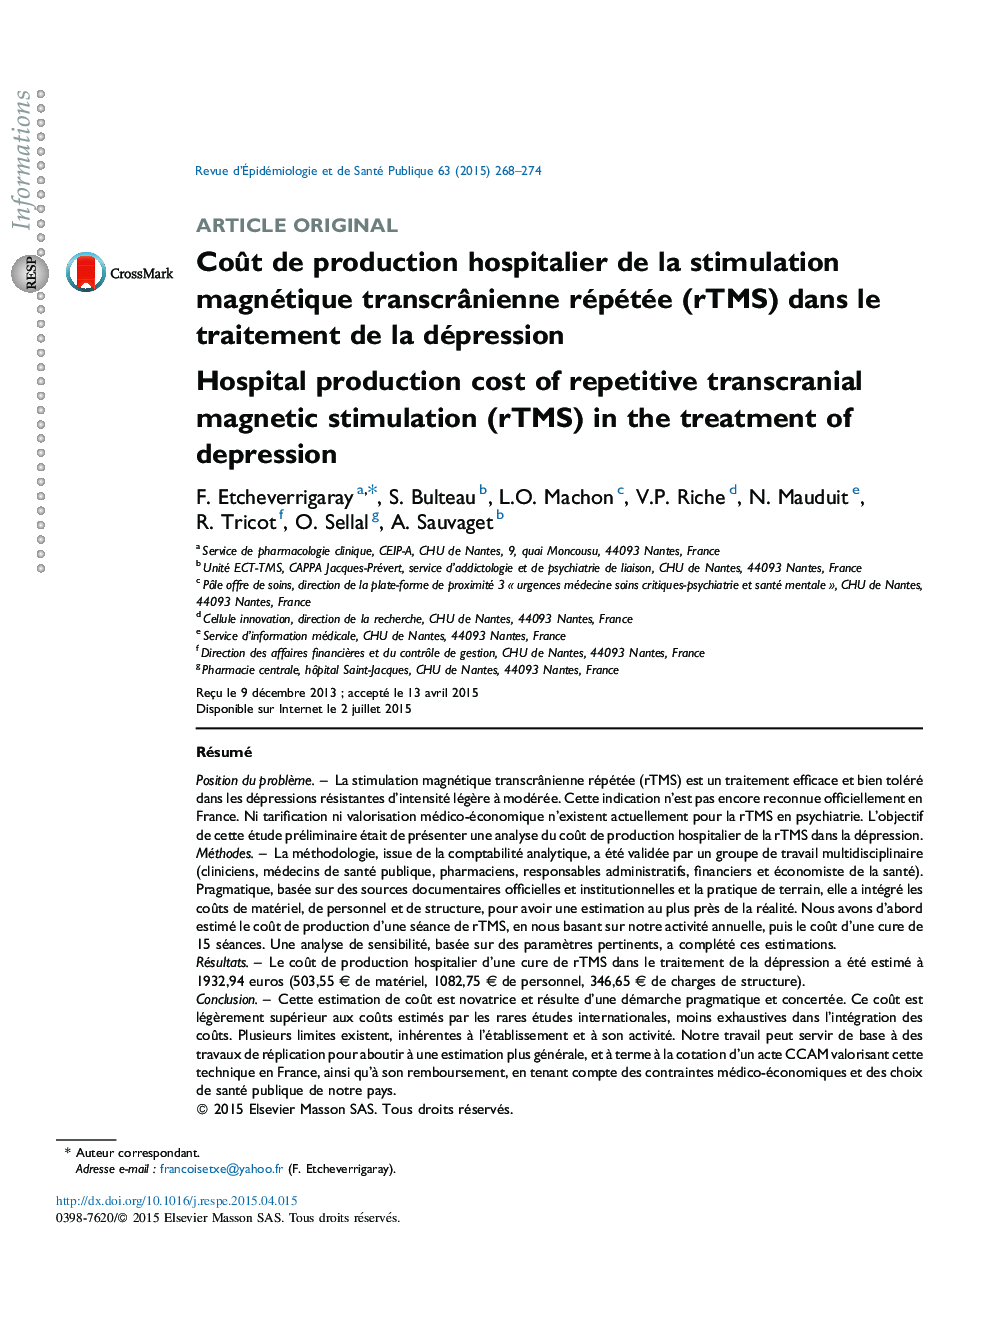 CoÃ»t de production hospitalier de la stimulation magnétique transcrÃ¢nienne répétée (rTMS) dans le traitement de la dépression